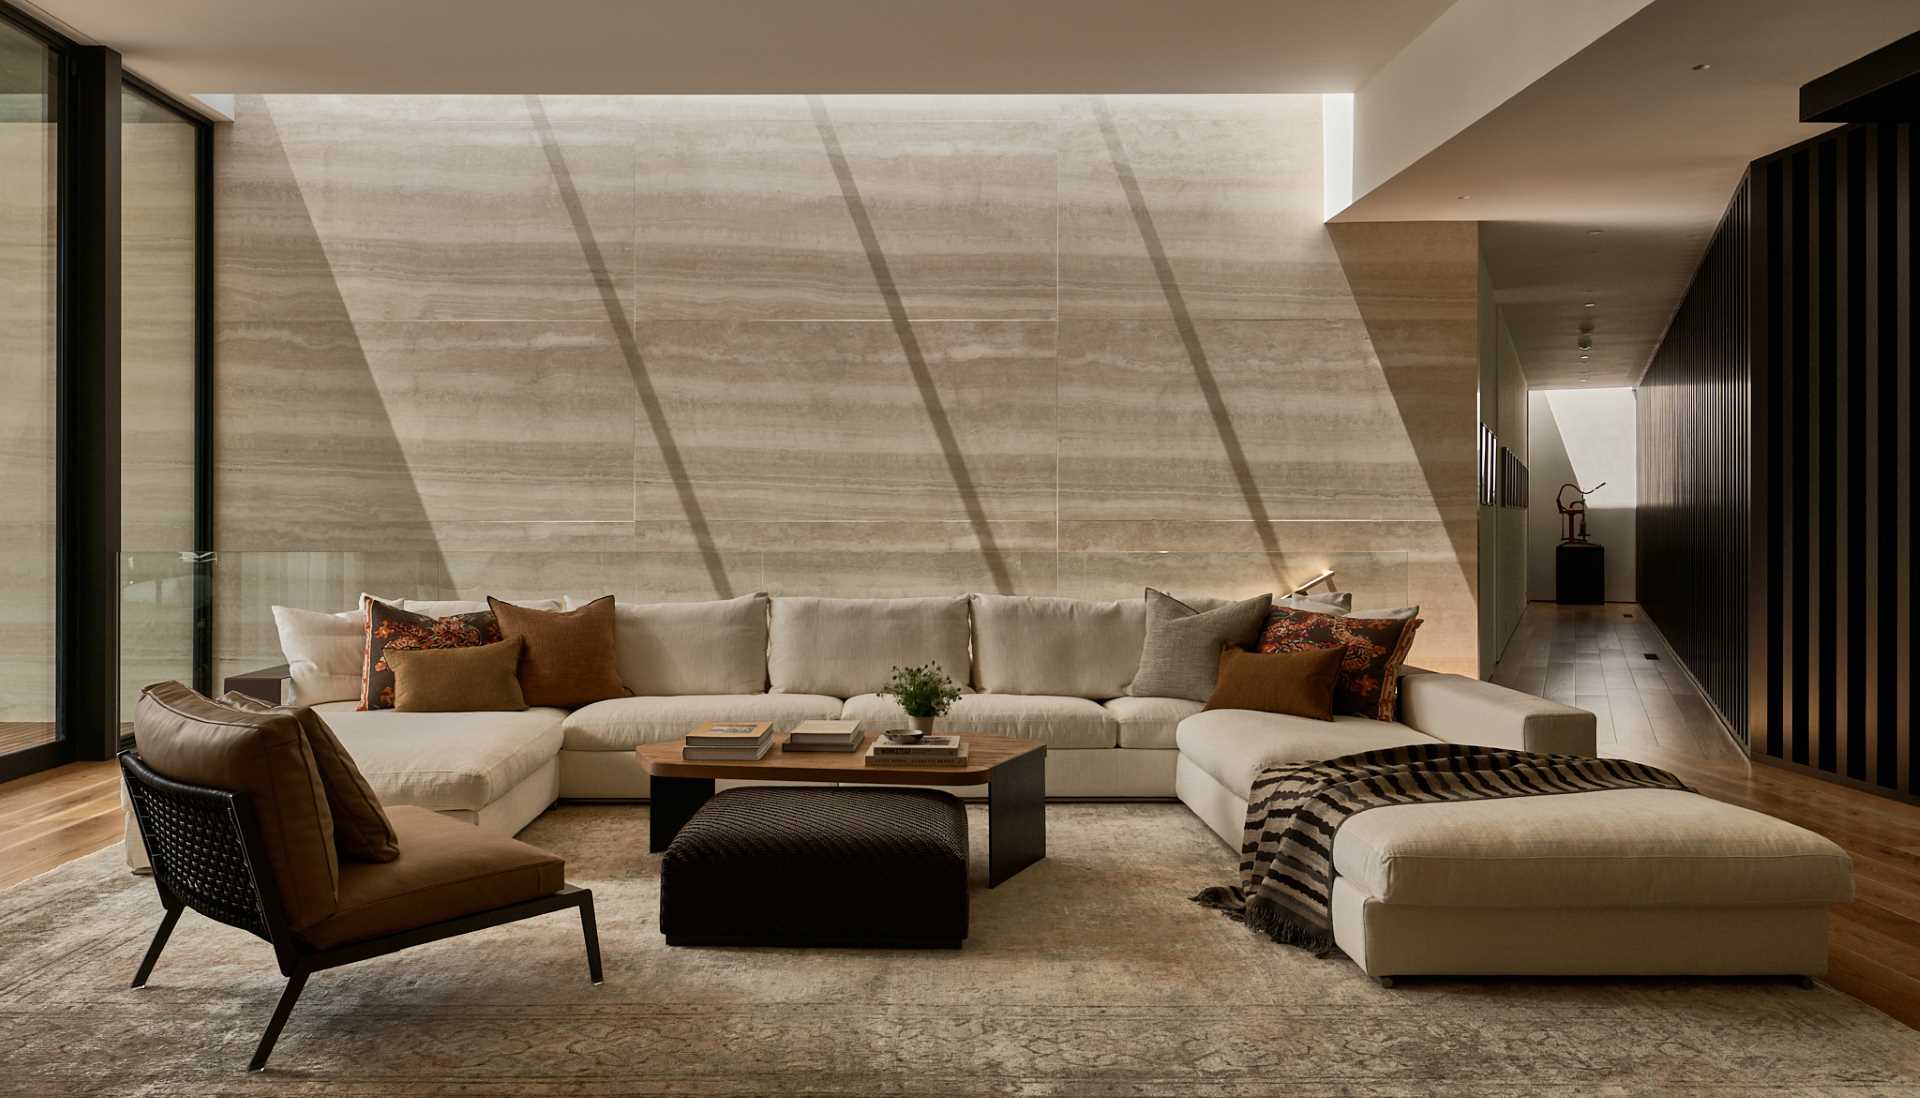 در این اتاق نشیمن، یک مبل بزرگ فضای زیادی برای نشستن فراهم می کند، در حالی که دیوار تراورتن عنصری طبیعی به اتاق اضافه می کند.